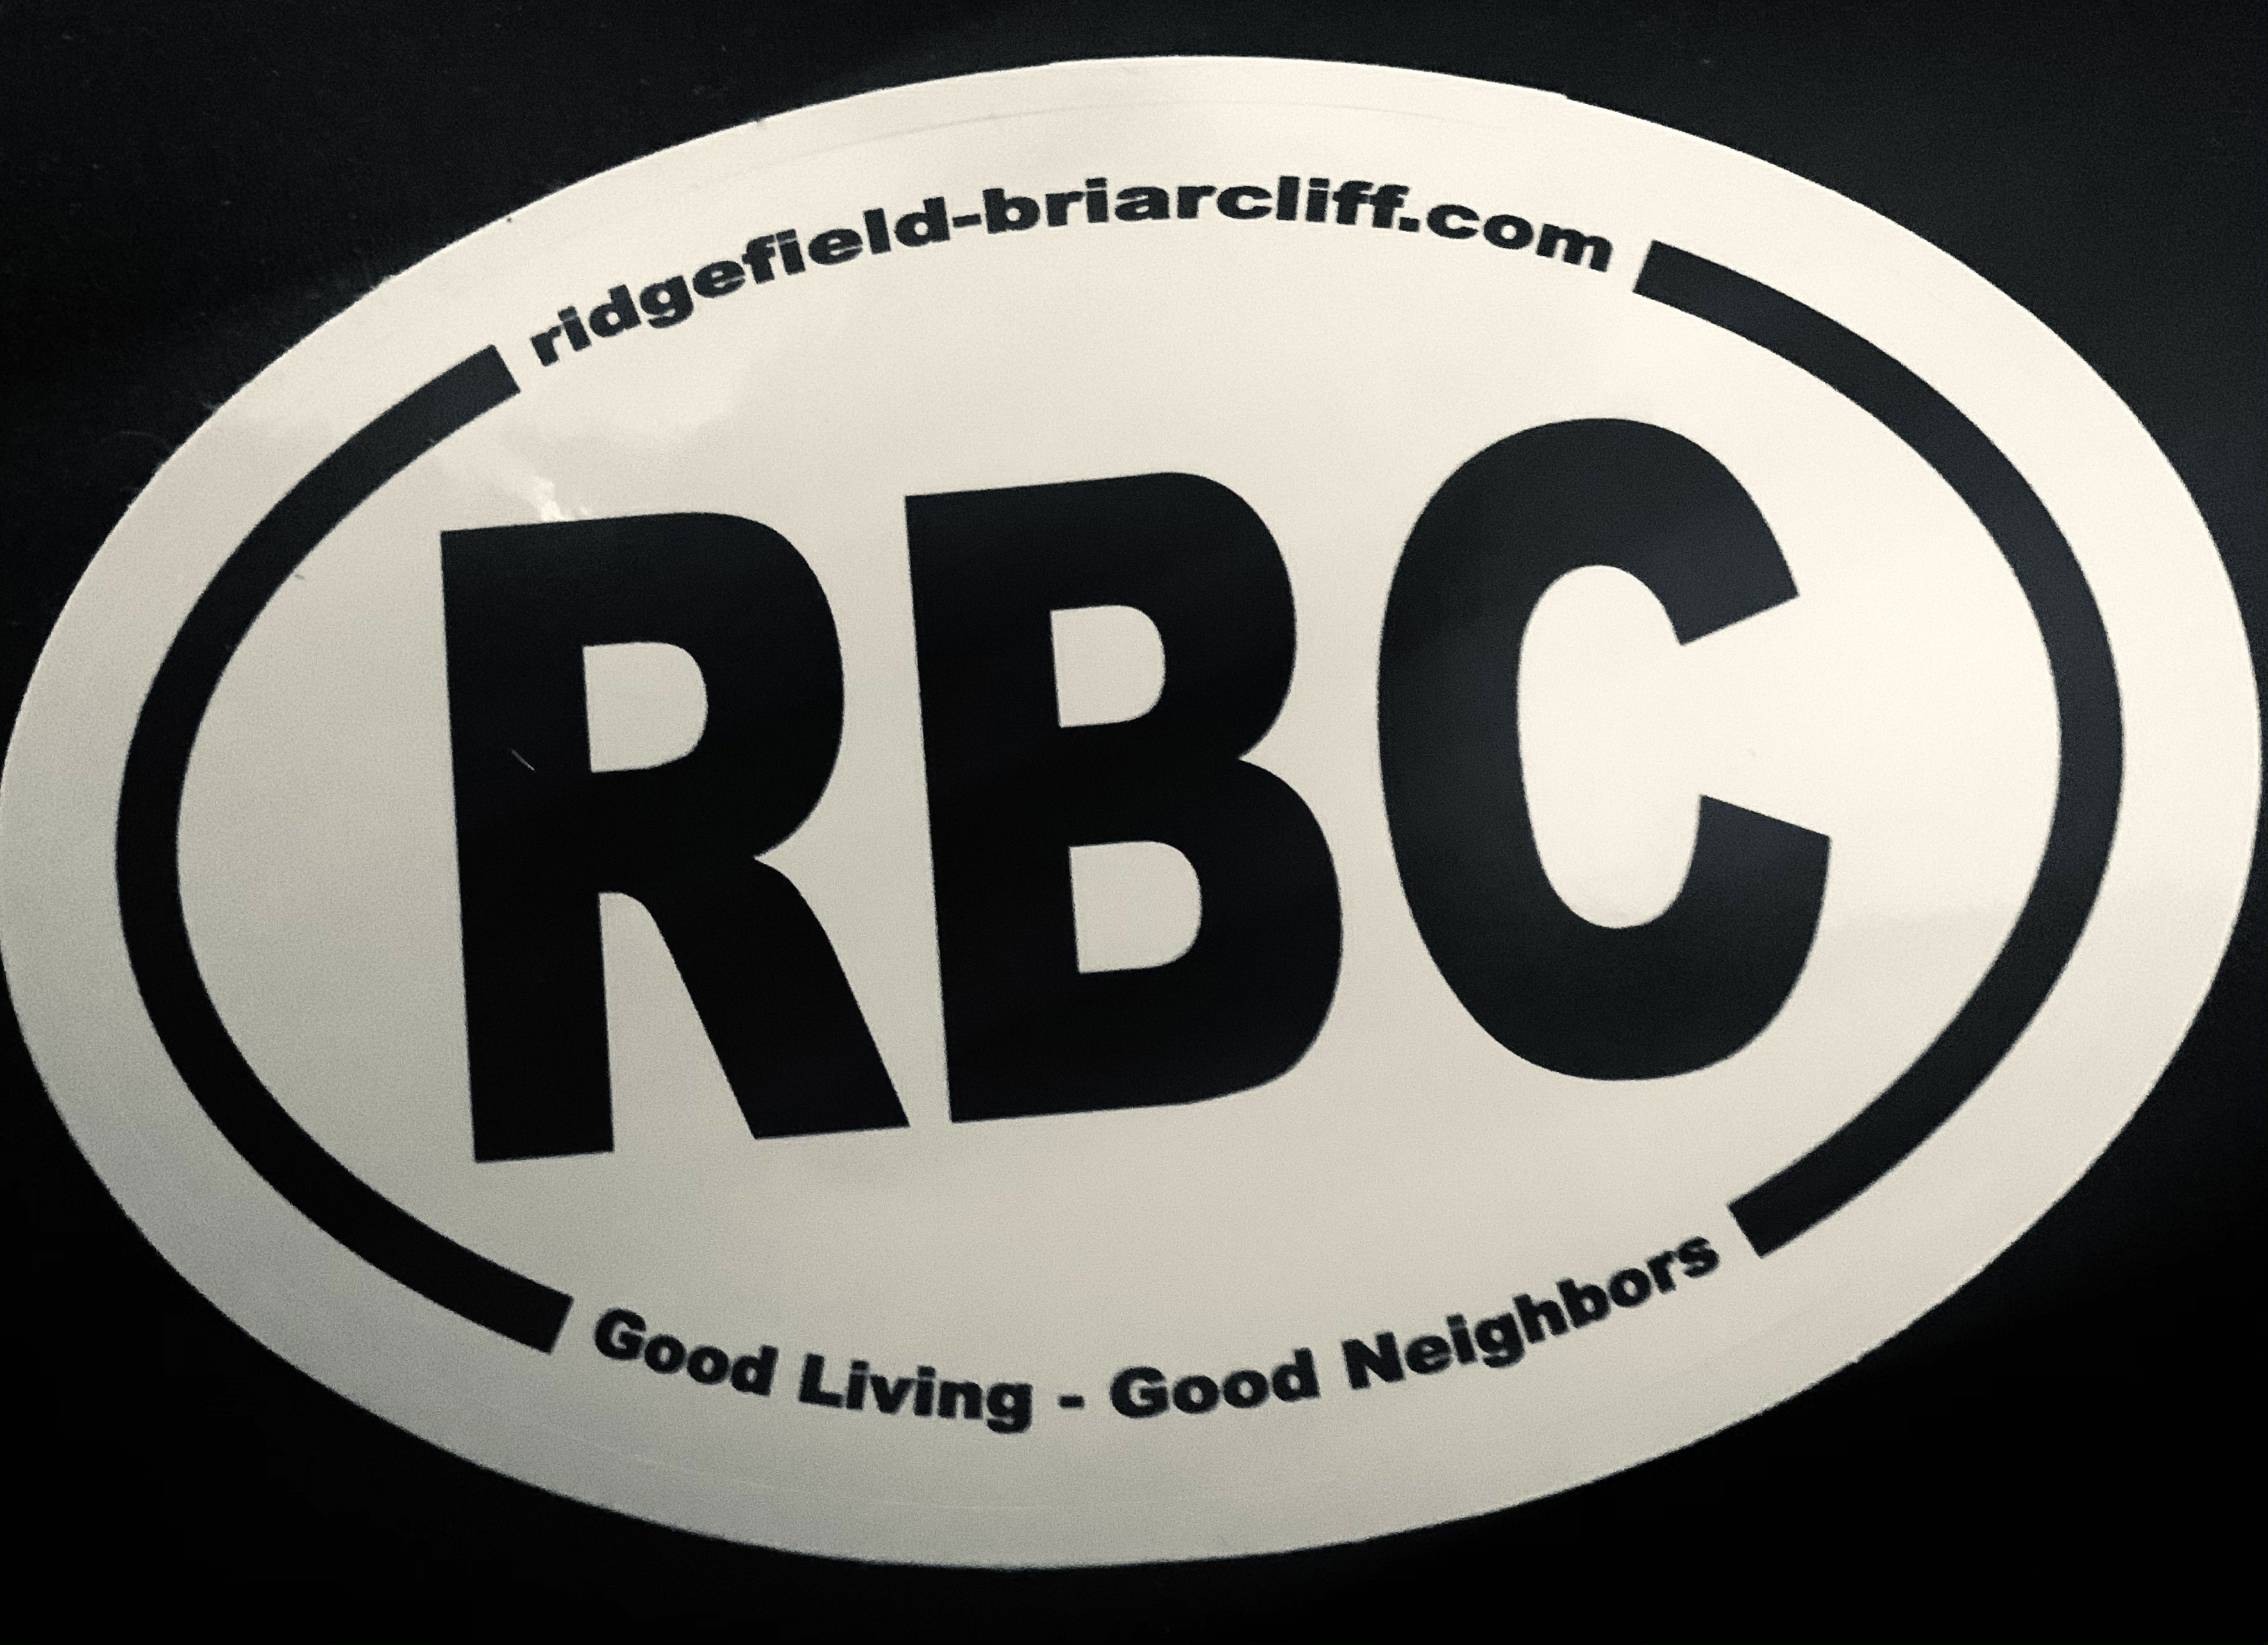 Ridgefield Briarcliff